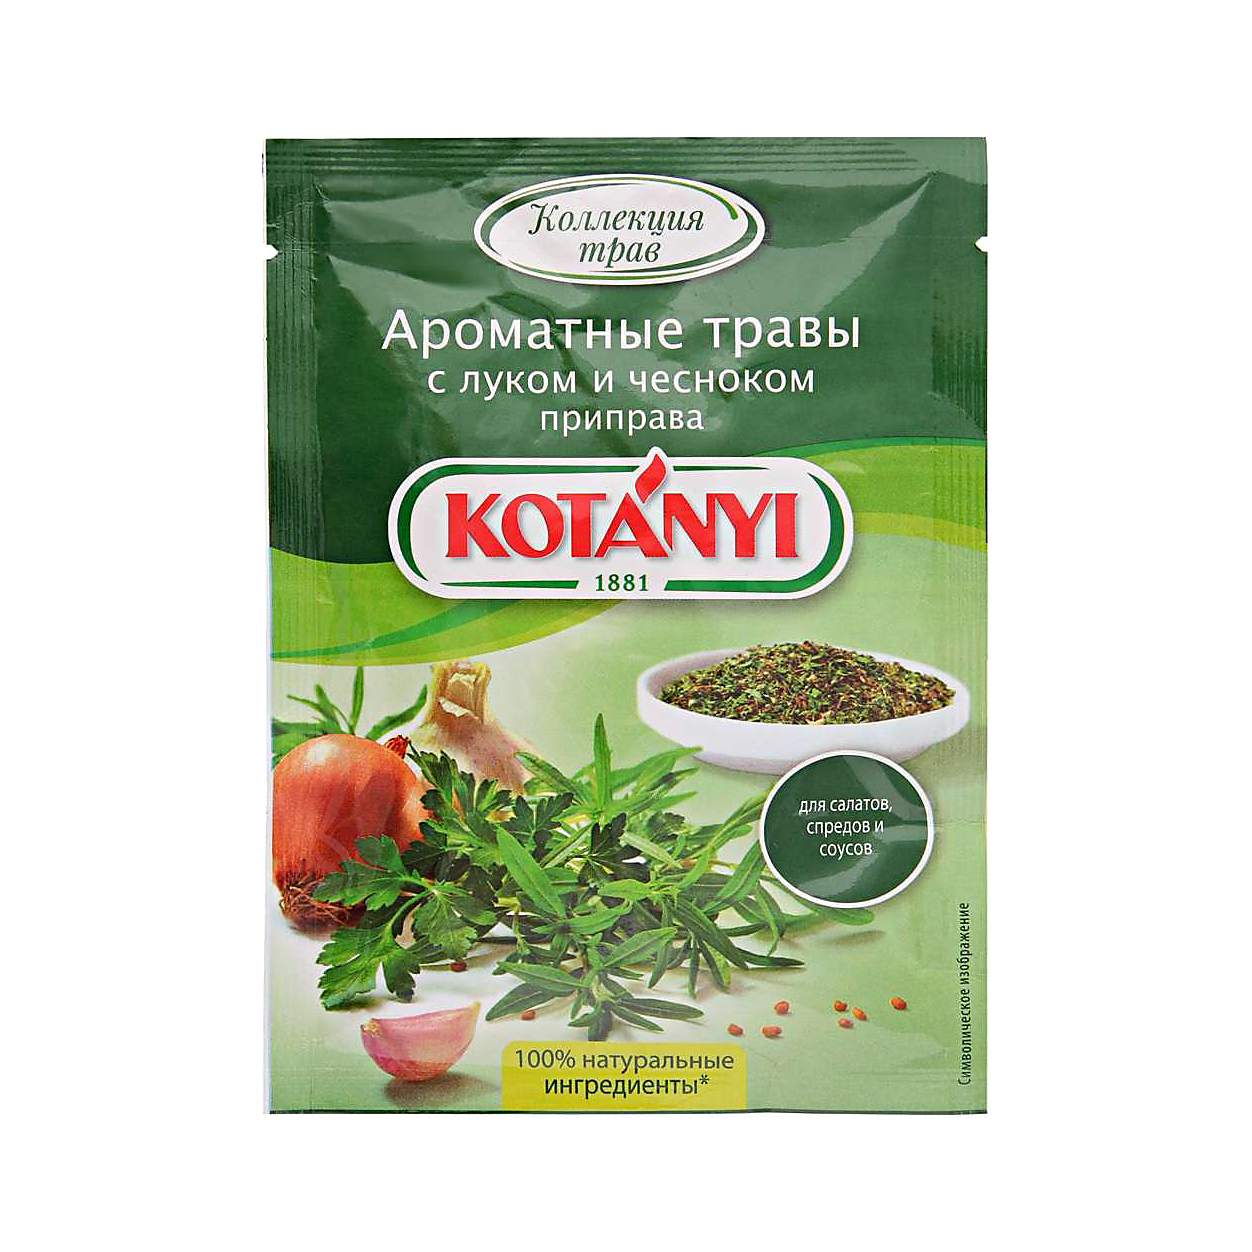 Приправа Kotanyi Ароматные травы с луком и чесноком 20 г приправа kotanyi ароматные травы с луком и чесноком 20 г